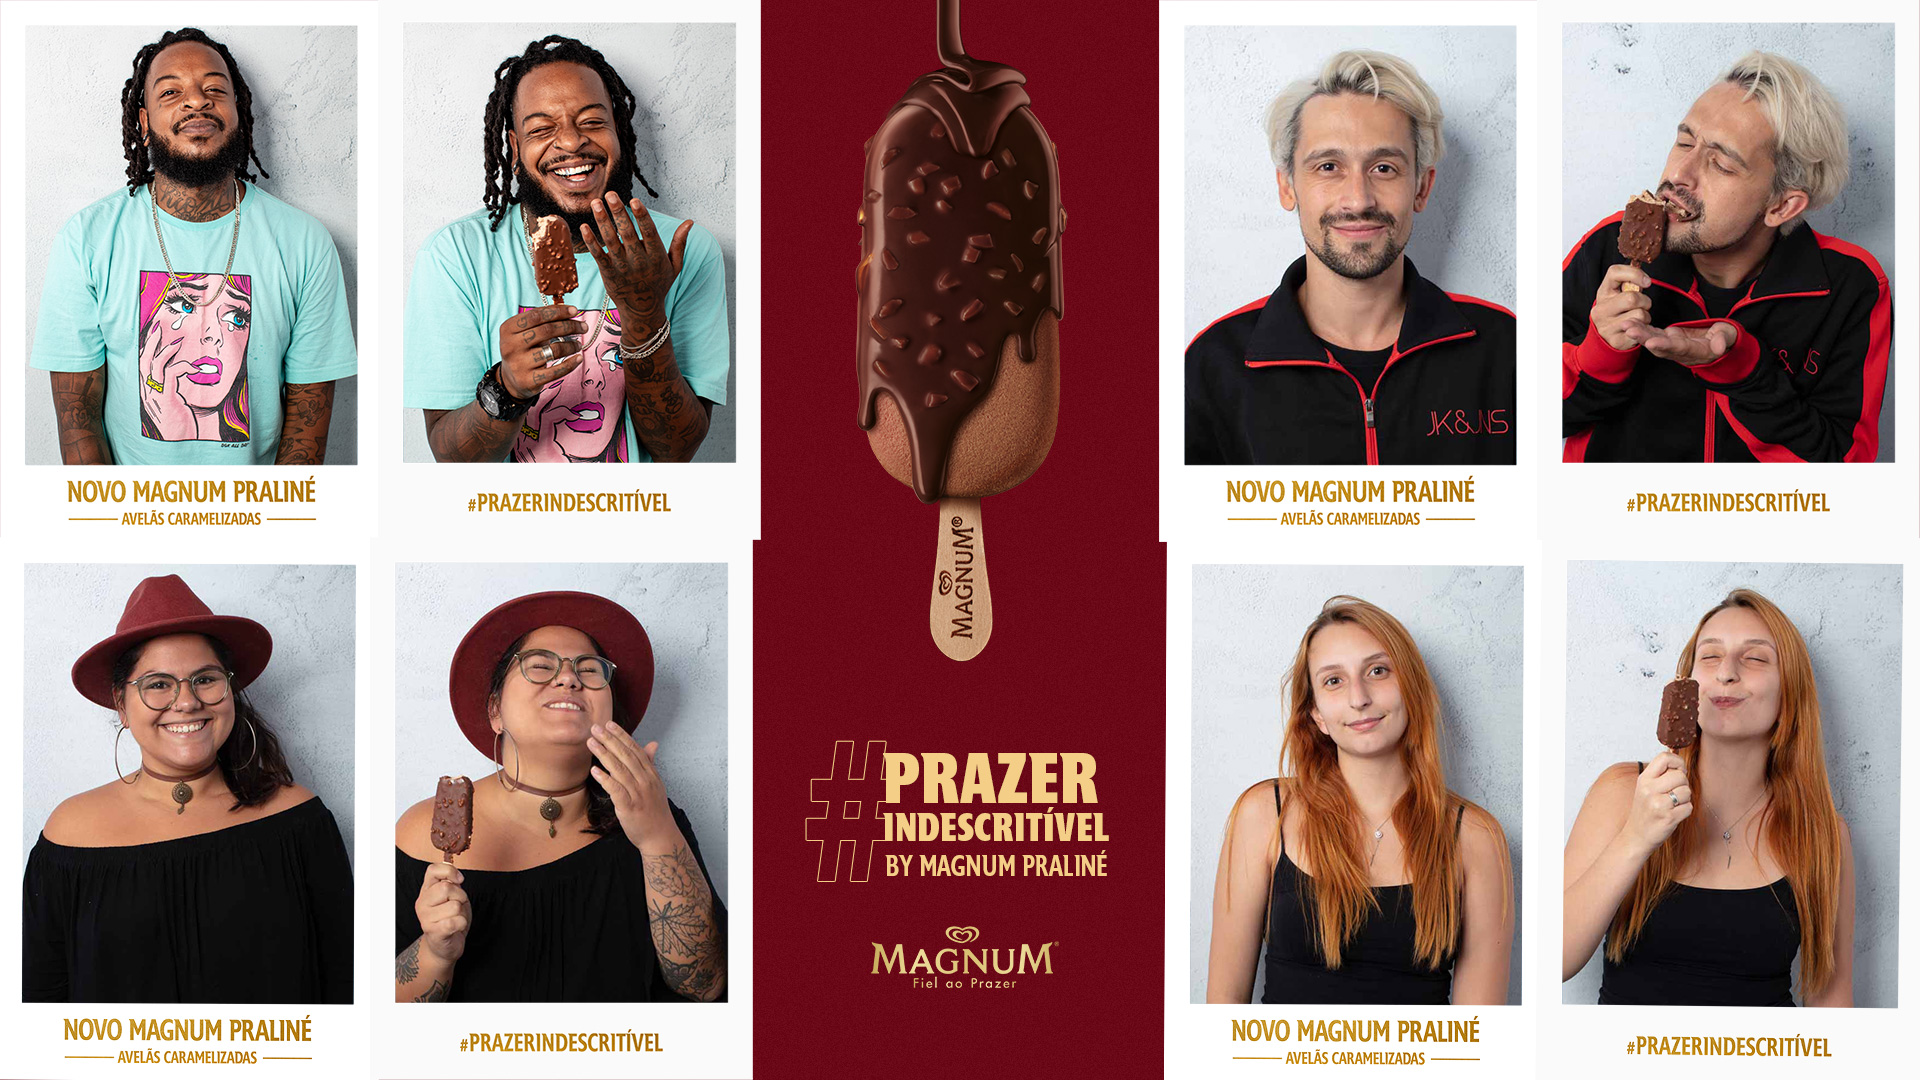 Magnum divulga novo sabor em campanha no metrô de São Paulo